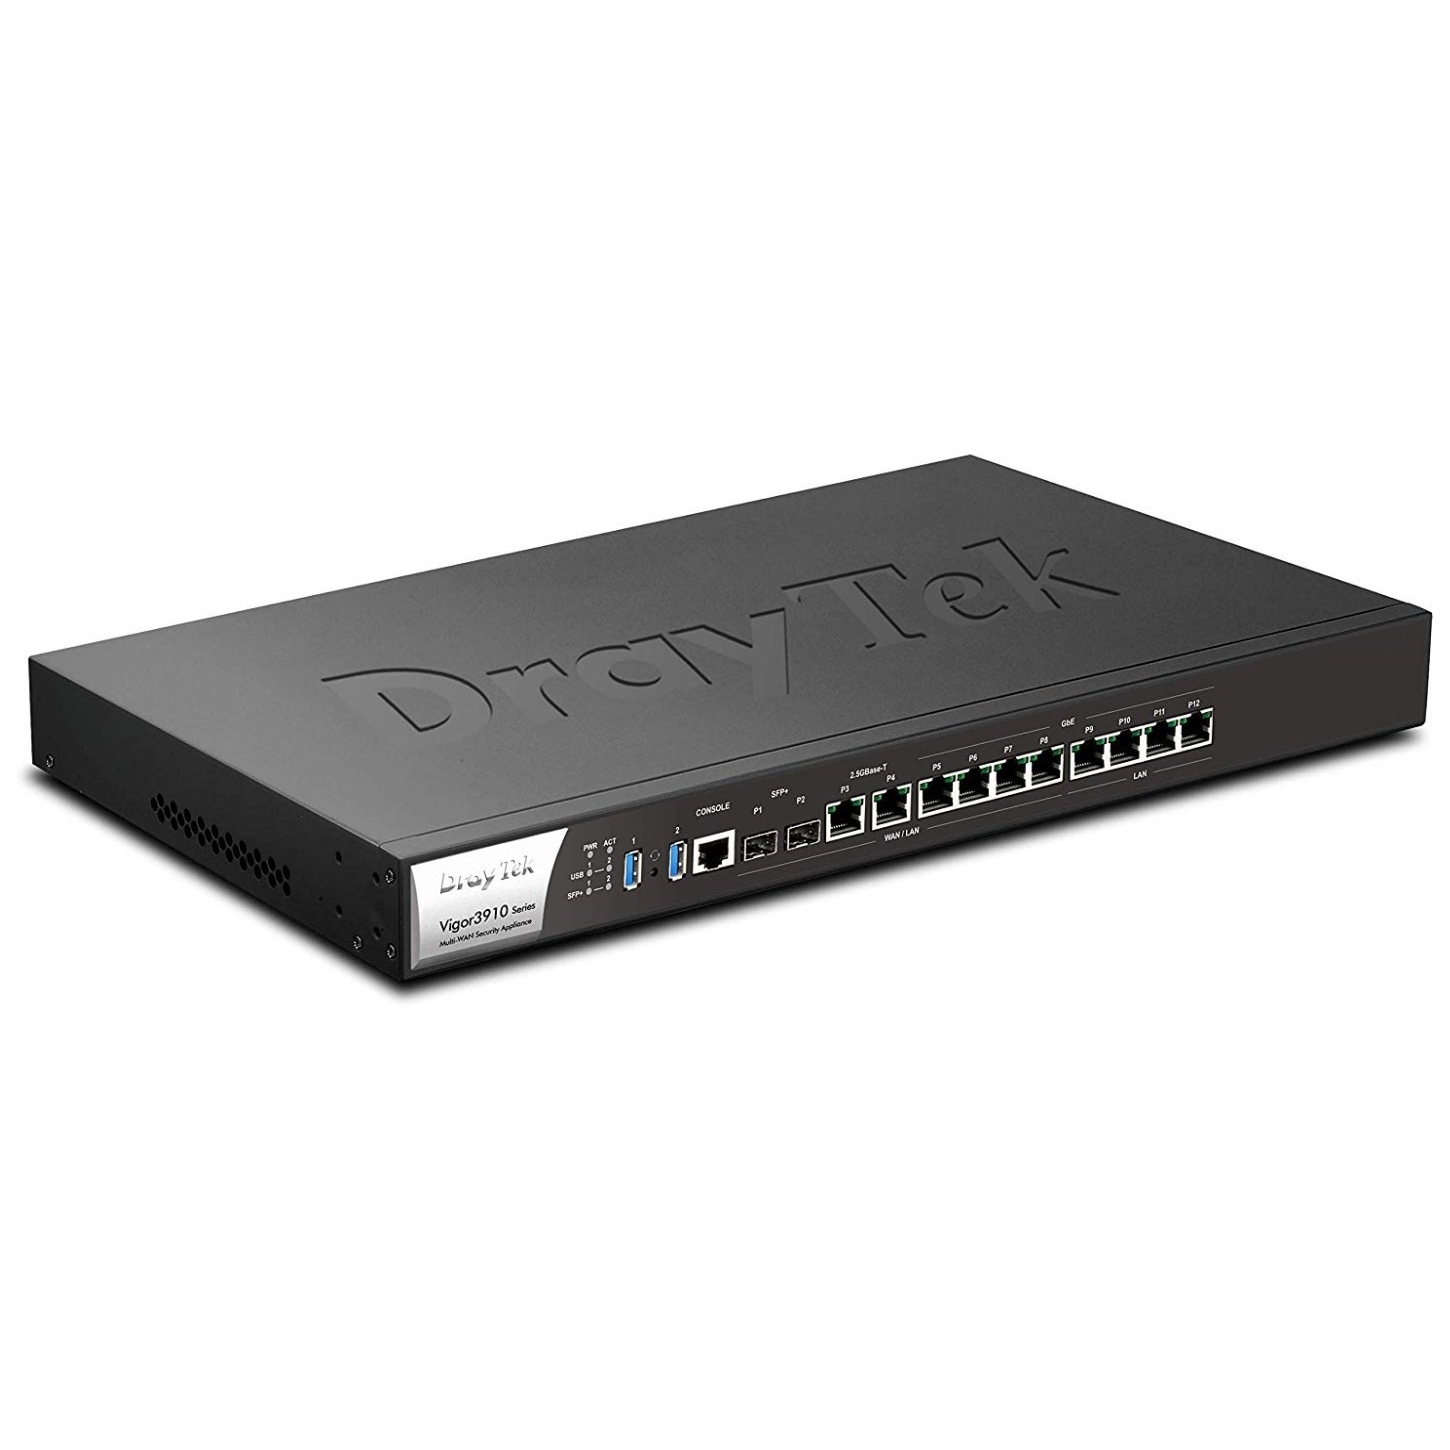 Draytek Vigor 3910 Multi WAN 10GigaBit Load Balance VPN Router